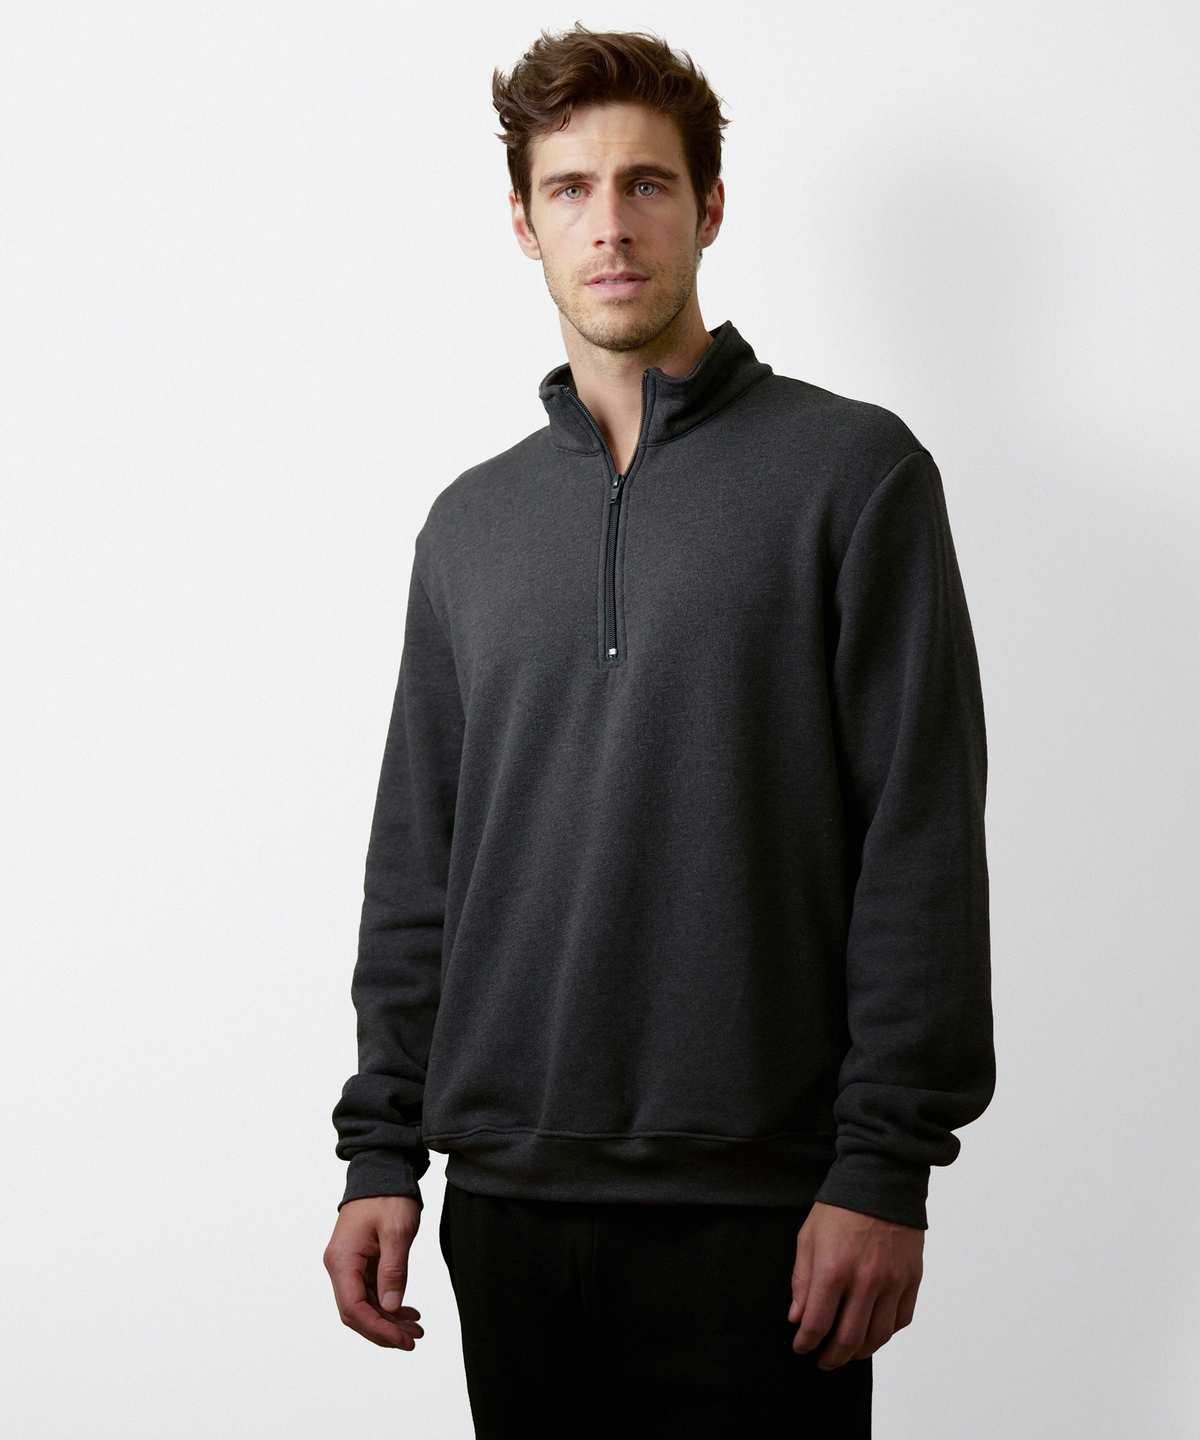 Quarter Zip Sweatshirt for Men (Dark Grey)